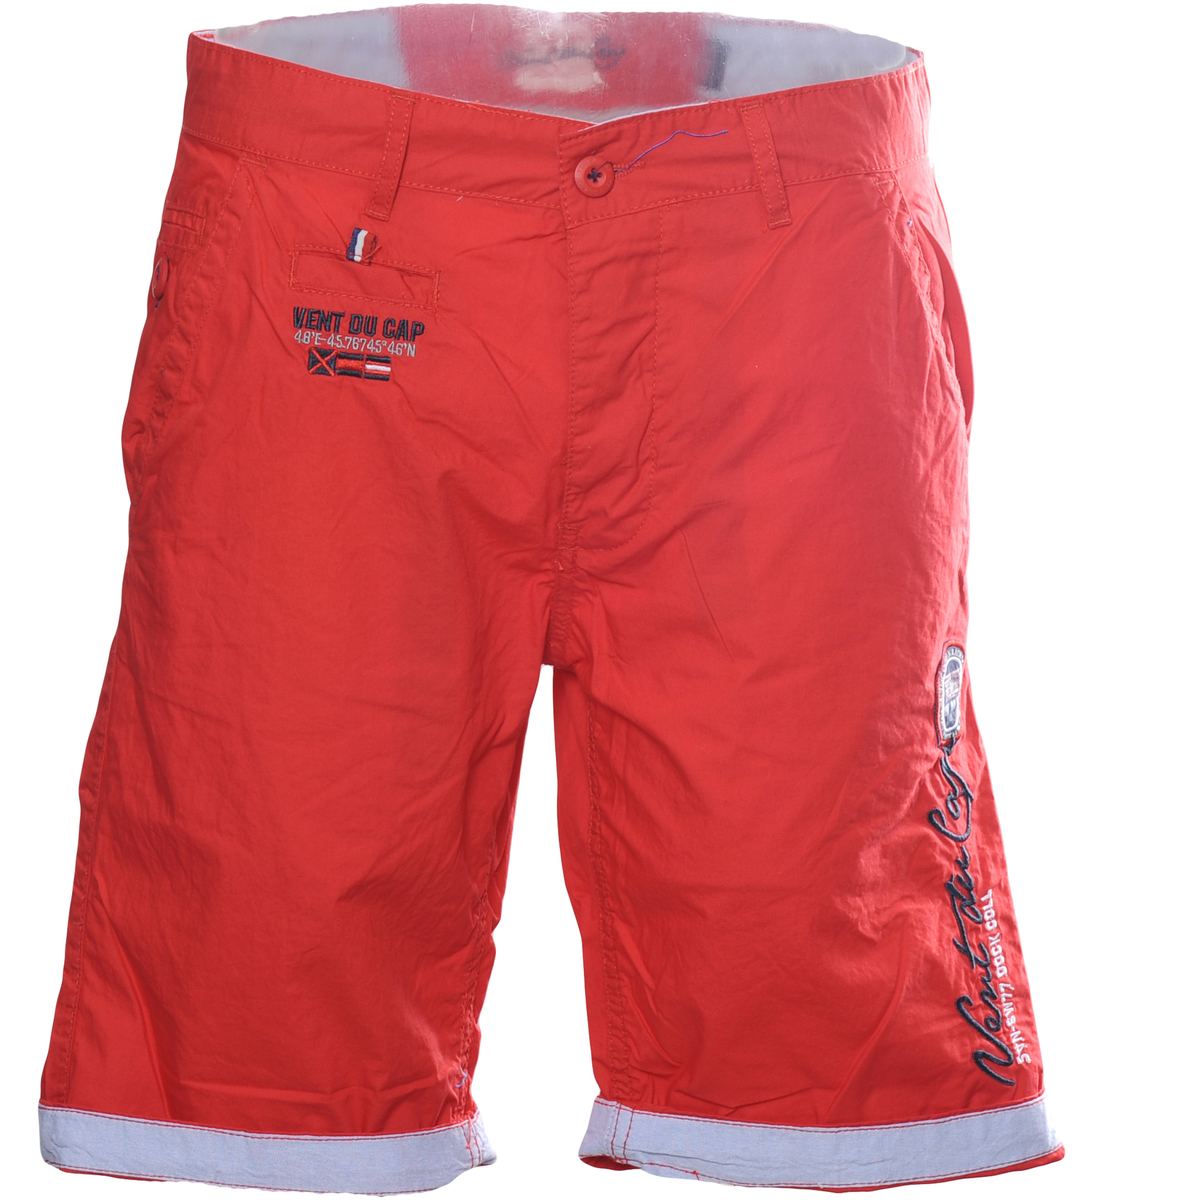 Textil Homem Shorts / Bermudas yummie bonded shaping caroline mid waist shorts Bermuda homme CREGOIR Vermelho